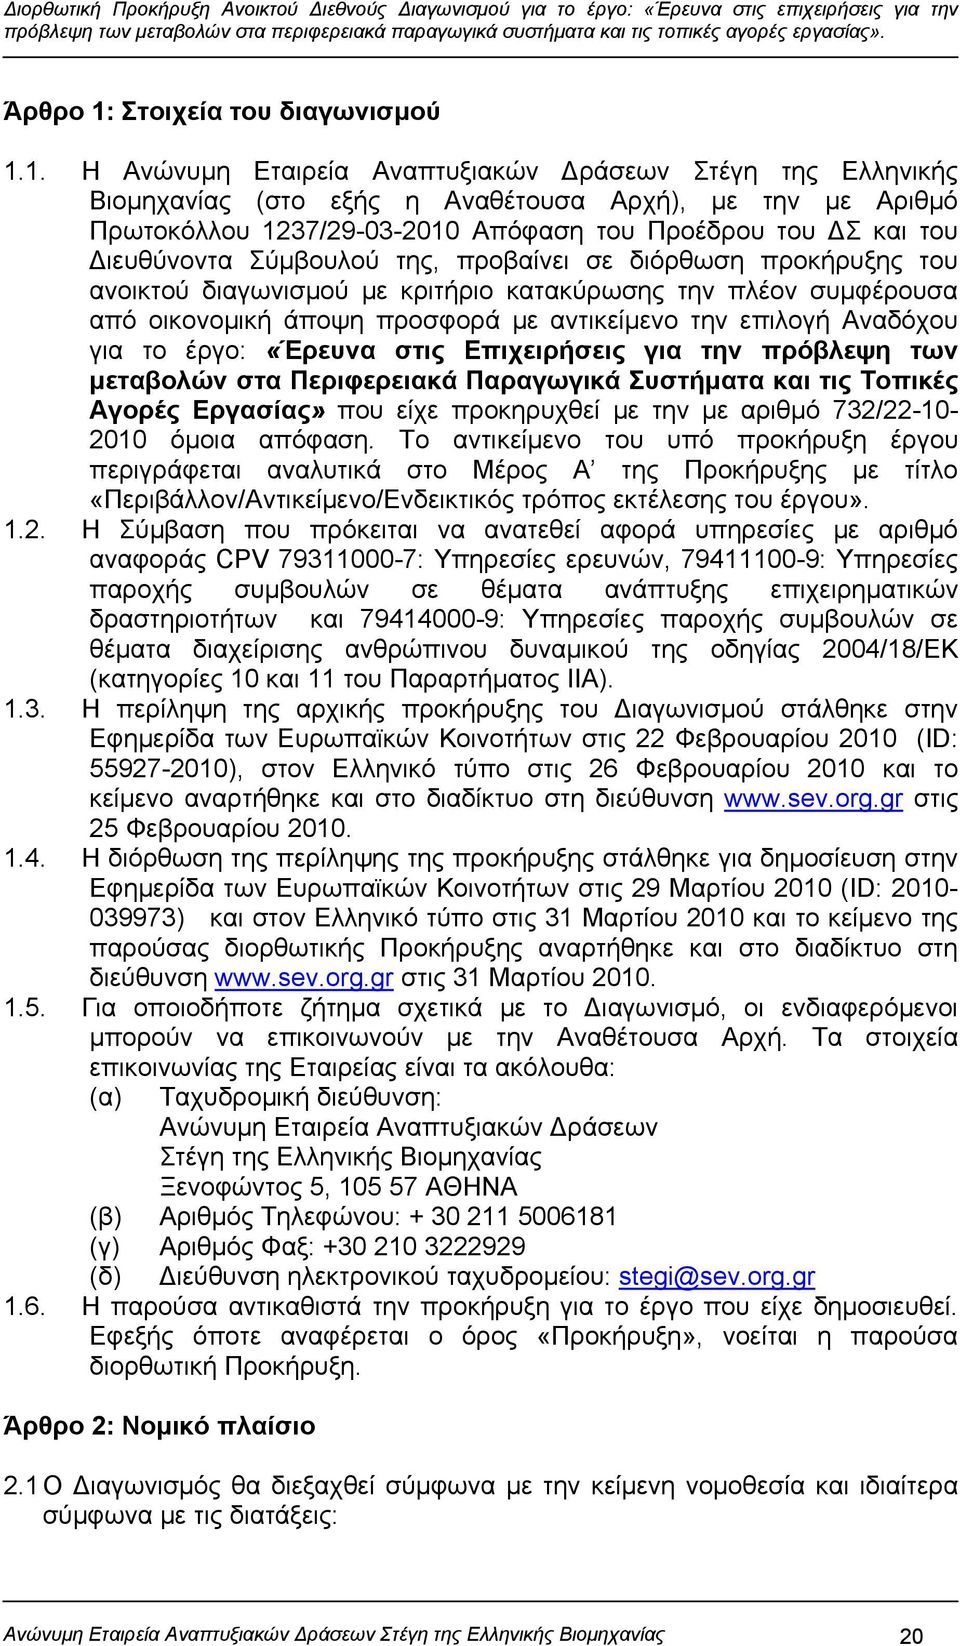 1. Η Ανώνυμη Εταιρεία Αναπτυξιακών Δράσεων Στέγη της Ελληνικής Βιομηχανίας (στο εξής η Αναθέτουσα Αρχή), με την με Αριθμό Πρωτοκόλλου 1237/29-03-2010 Απόφαση του Προέδρου του ΔΣ και του Διευθύνοντα